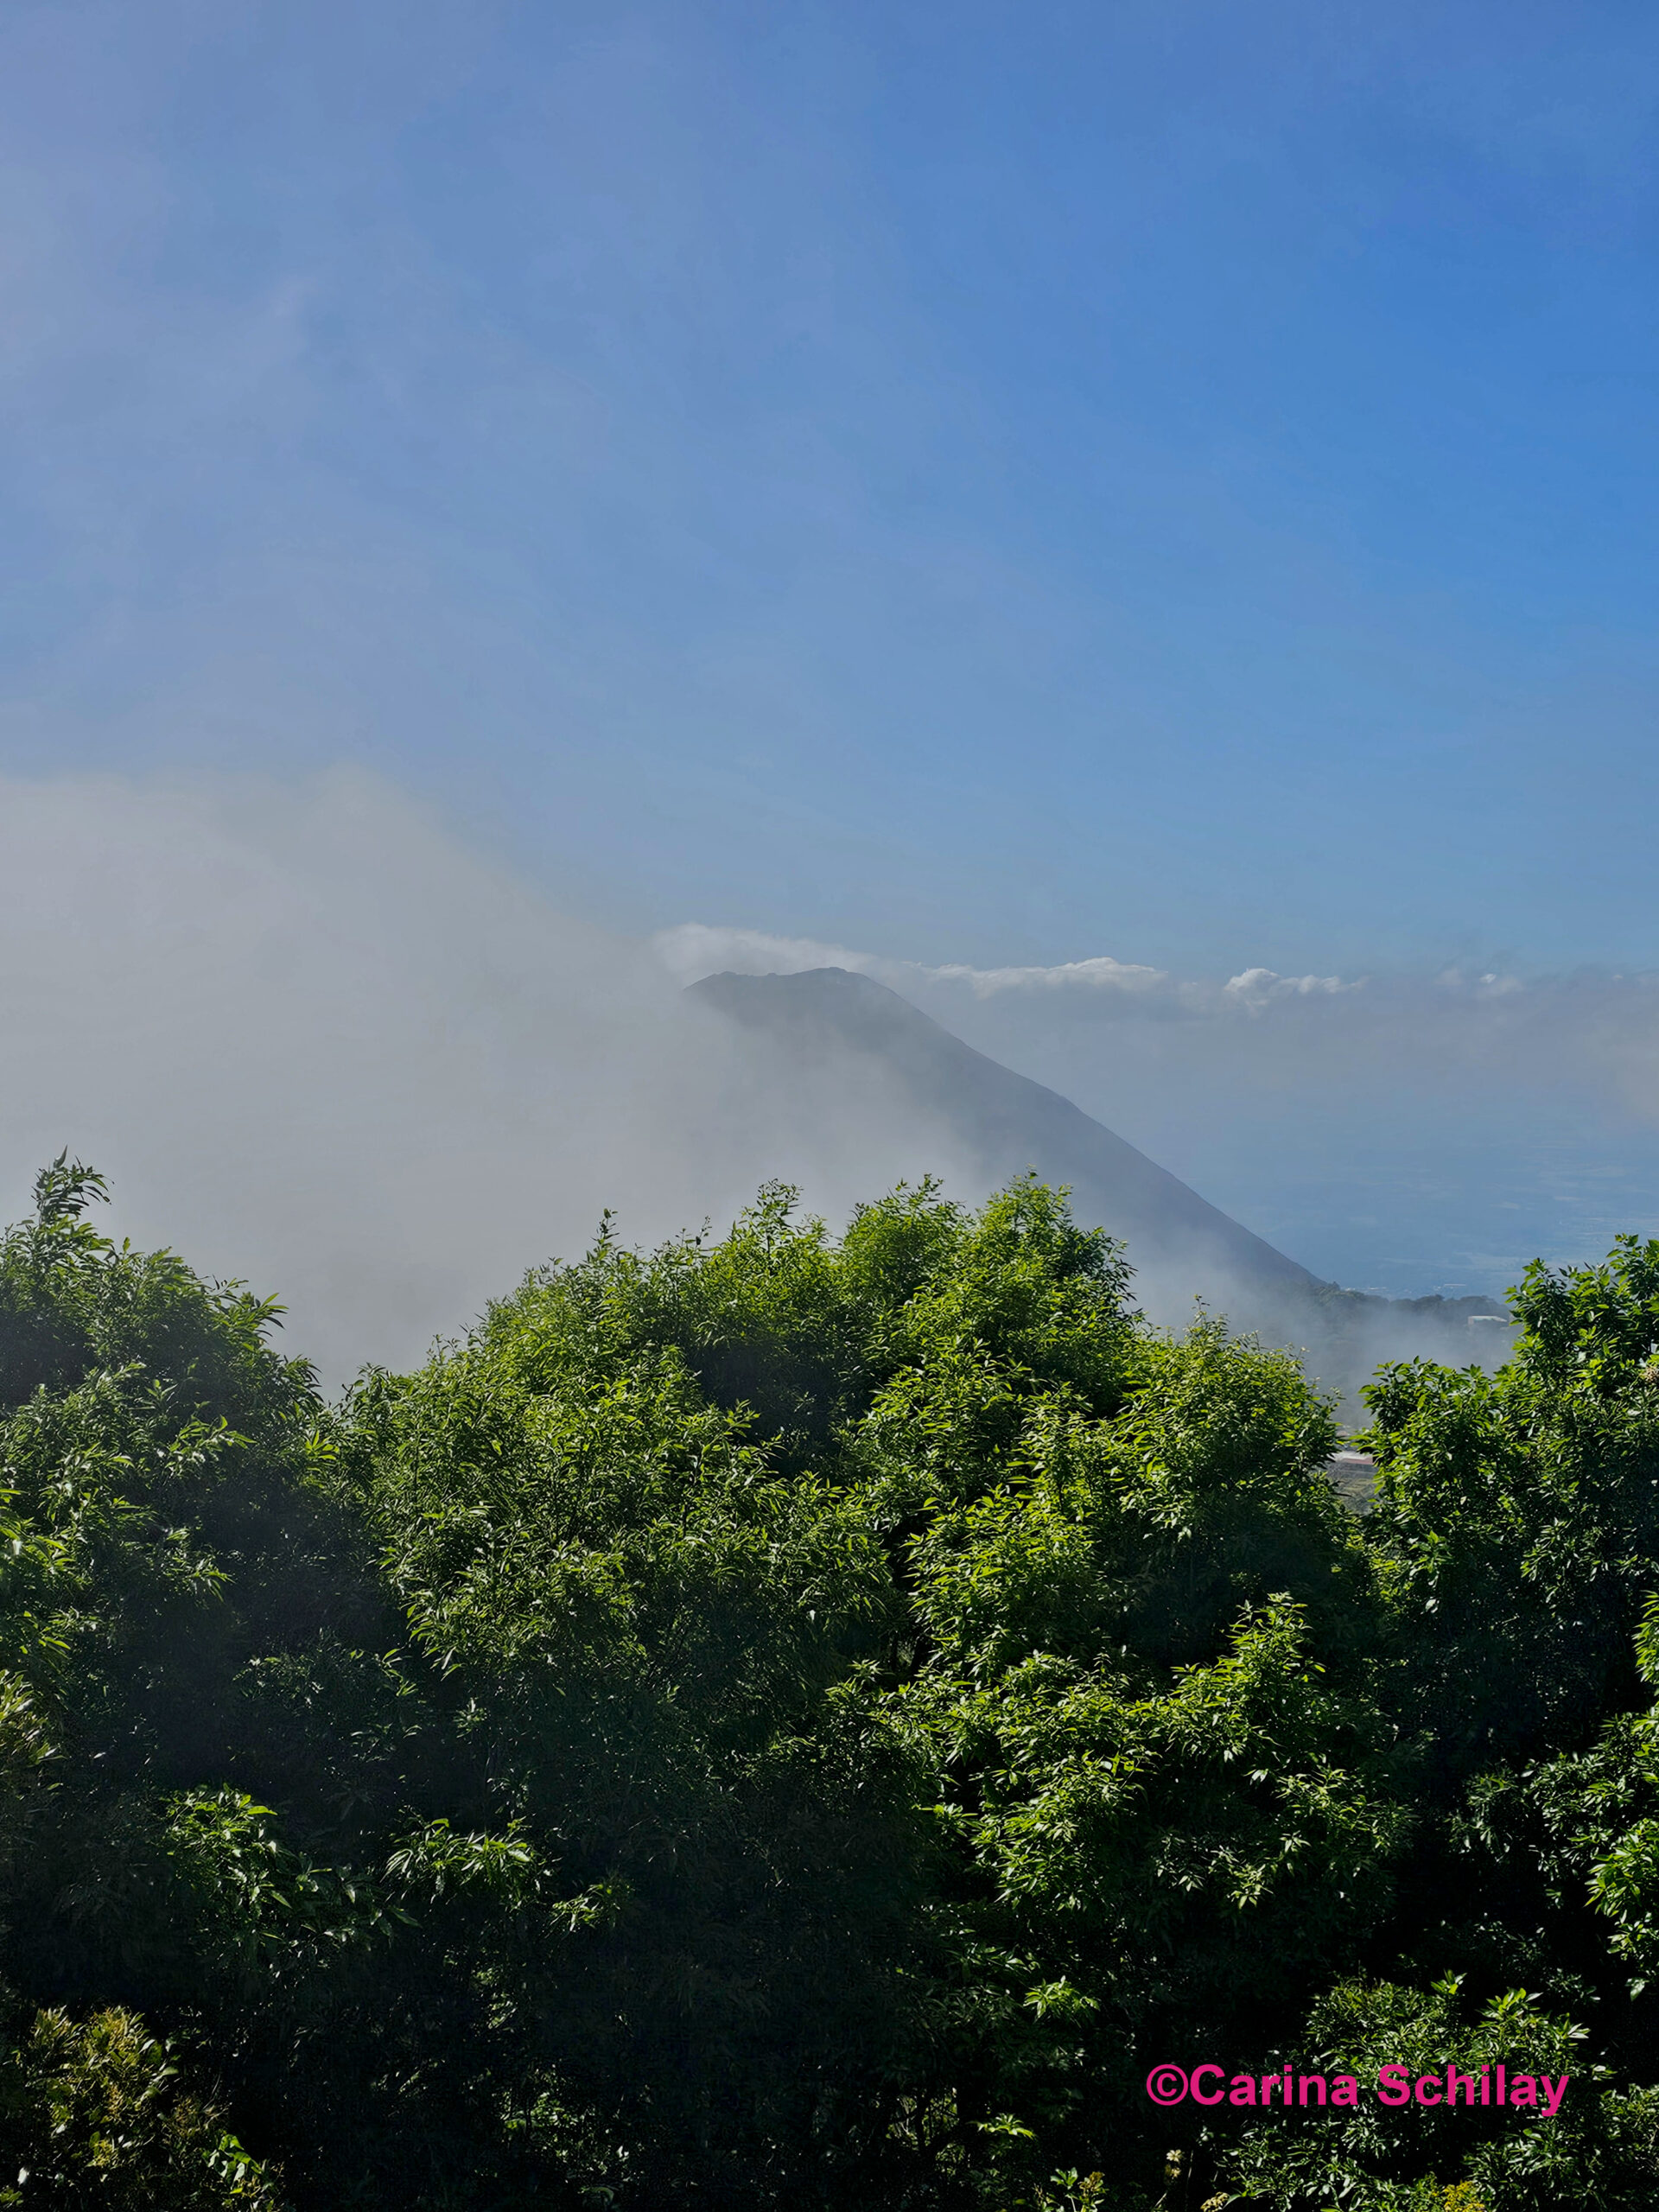 Üppiges Grün im Vordergrund mit dem mystischen Vulkan Izalco, der sich im Hintergrund hinter Wolken verbirgt.